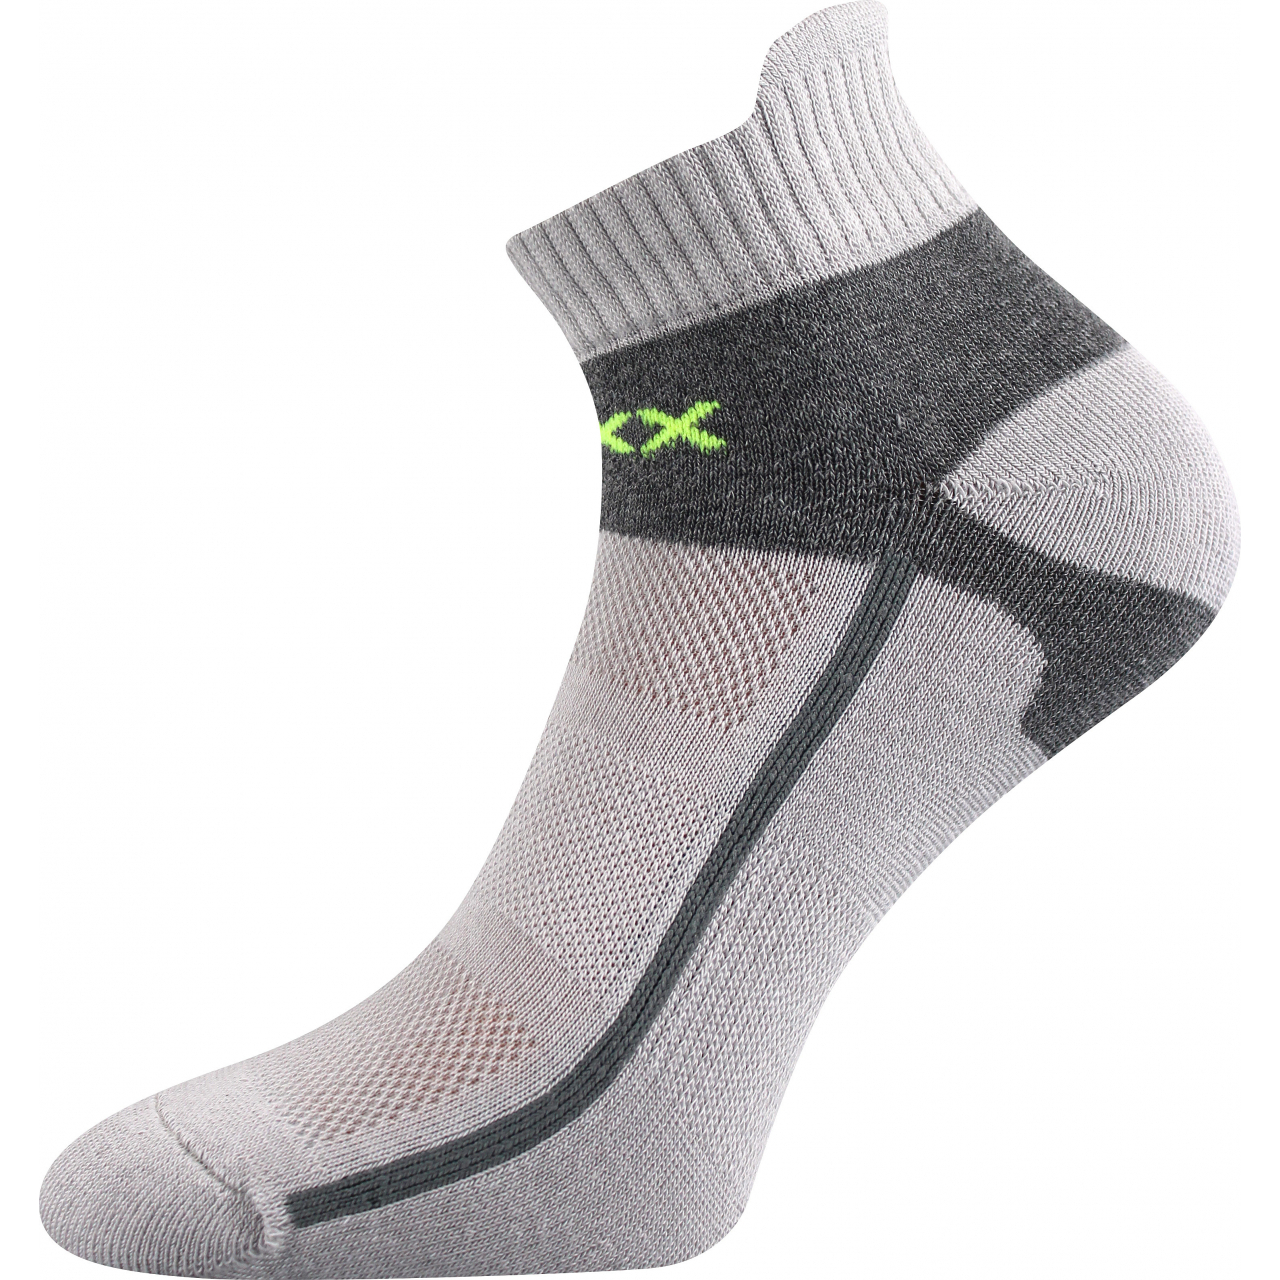 Ponožky sportovní Voxx Glowing - světle šedé-šedé, 35-38